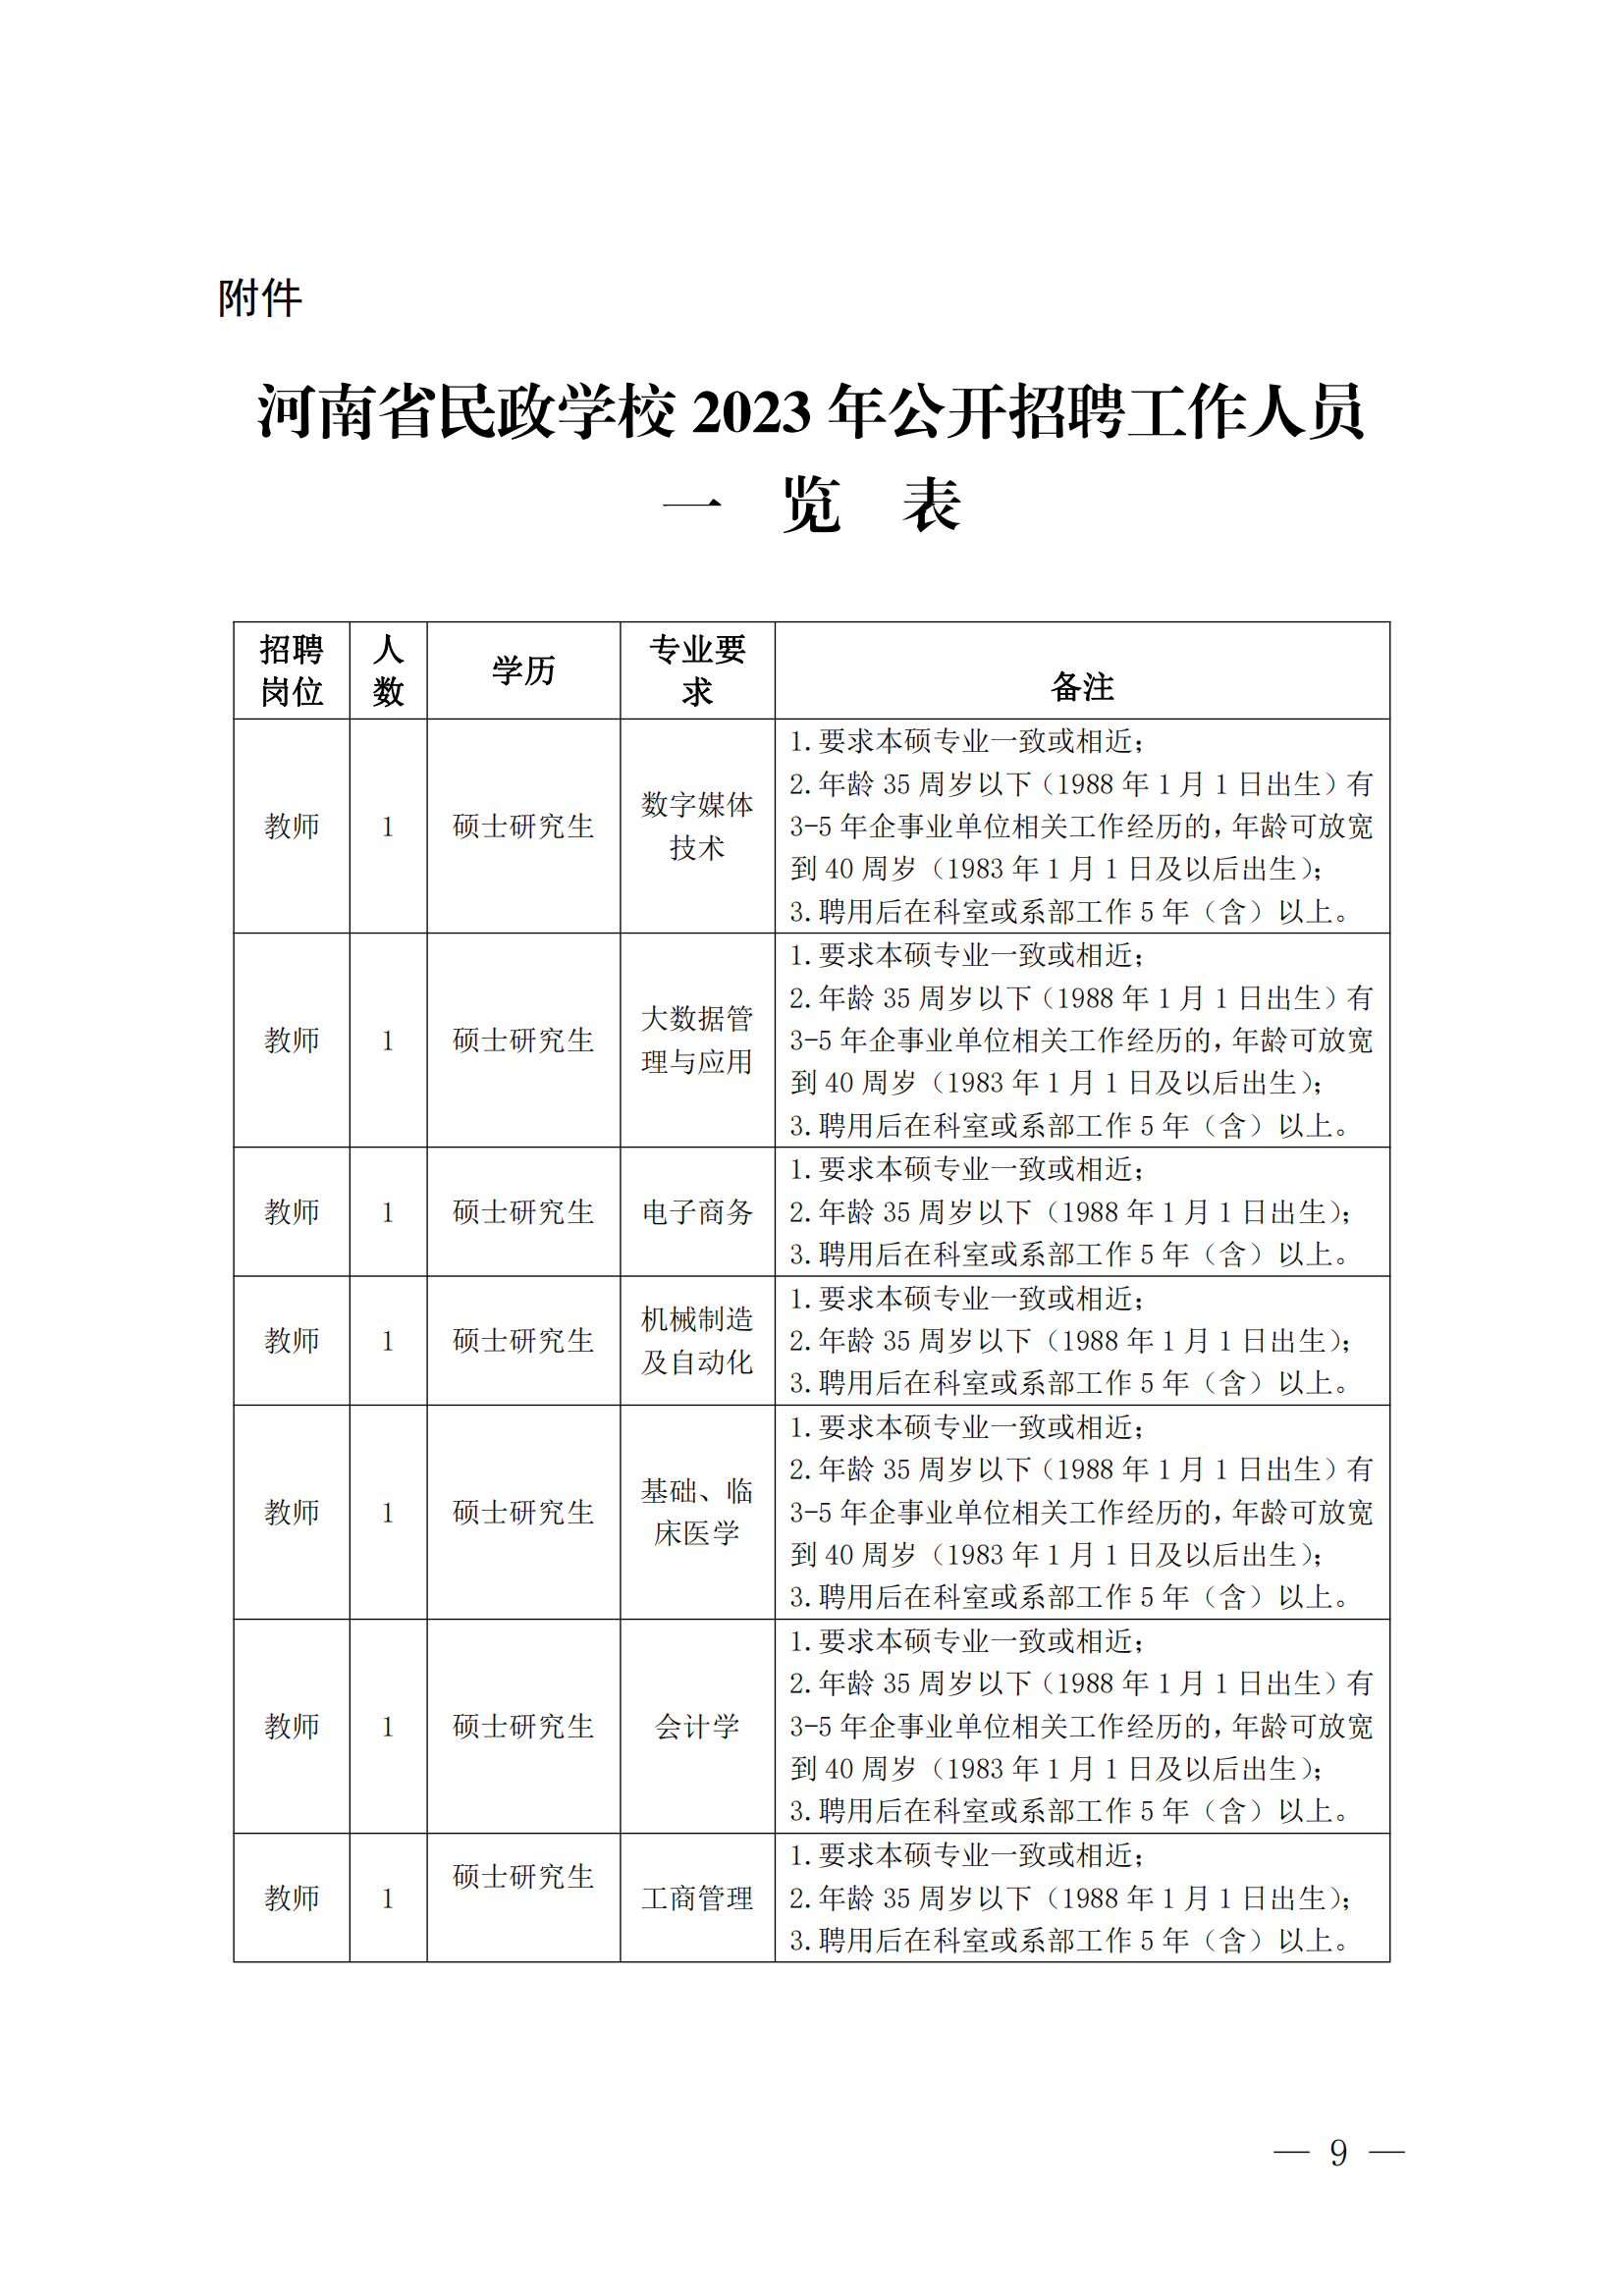 河南省民政学校招聘工作人员方案1_08.png